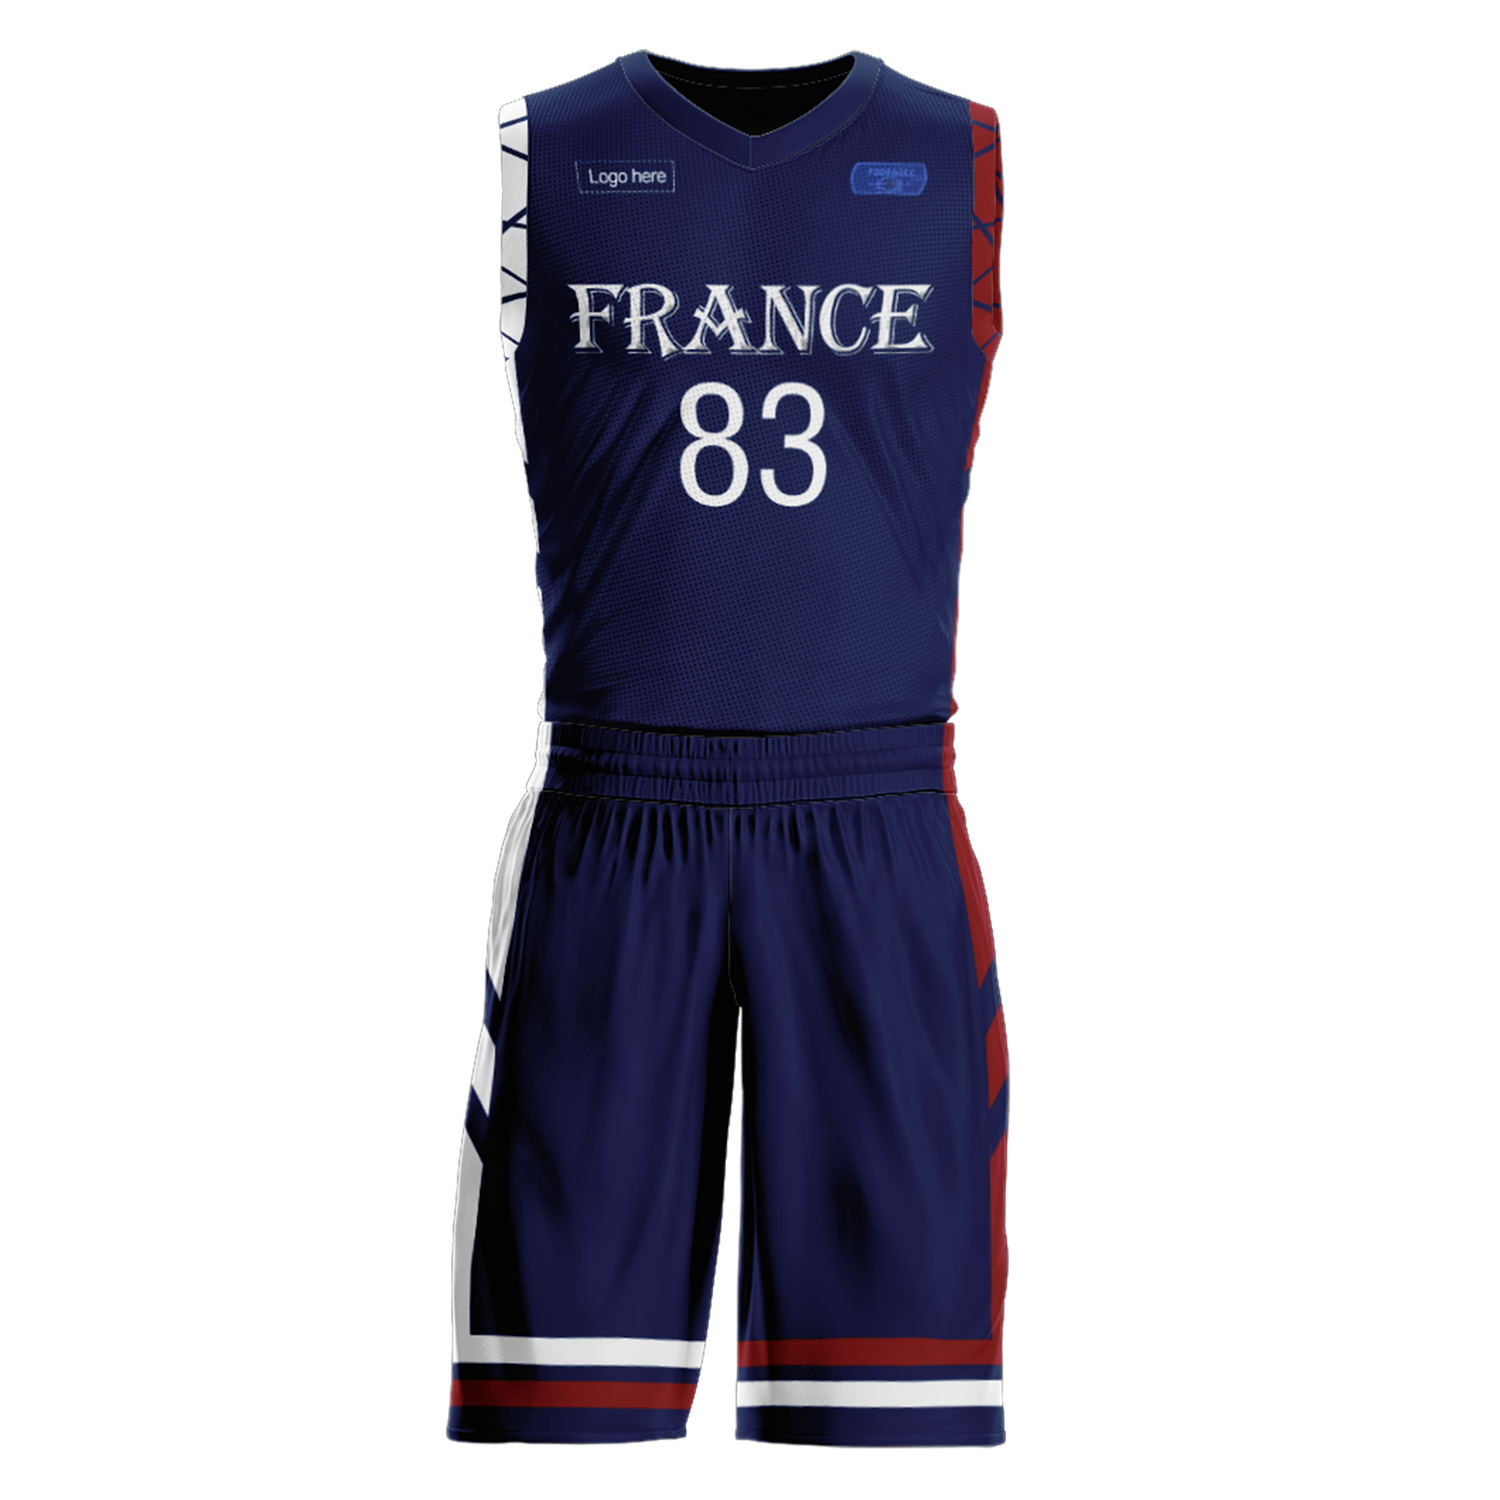 Trajes de baloncesto del equipo de Francia personalizados